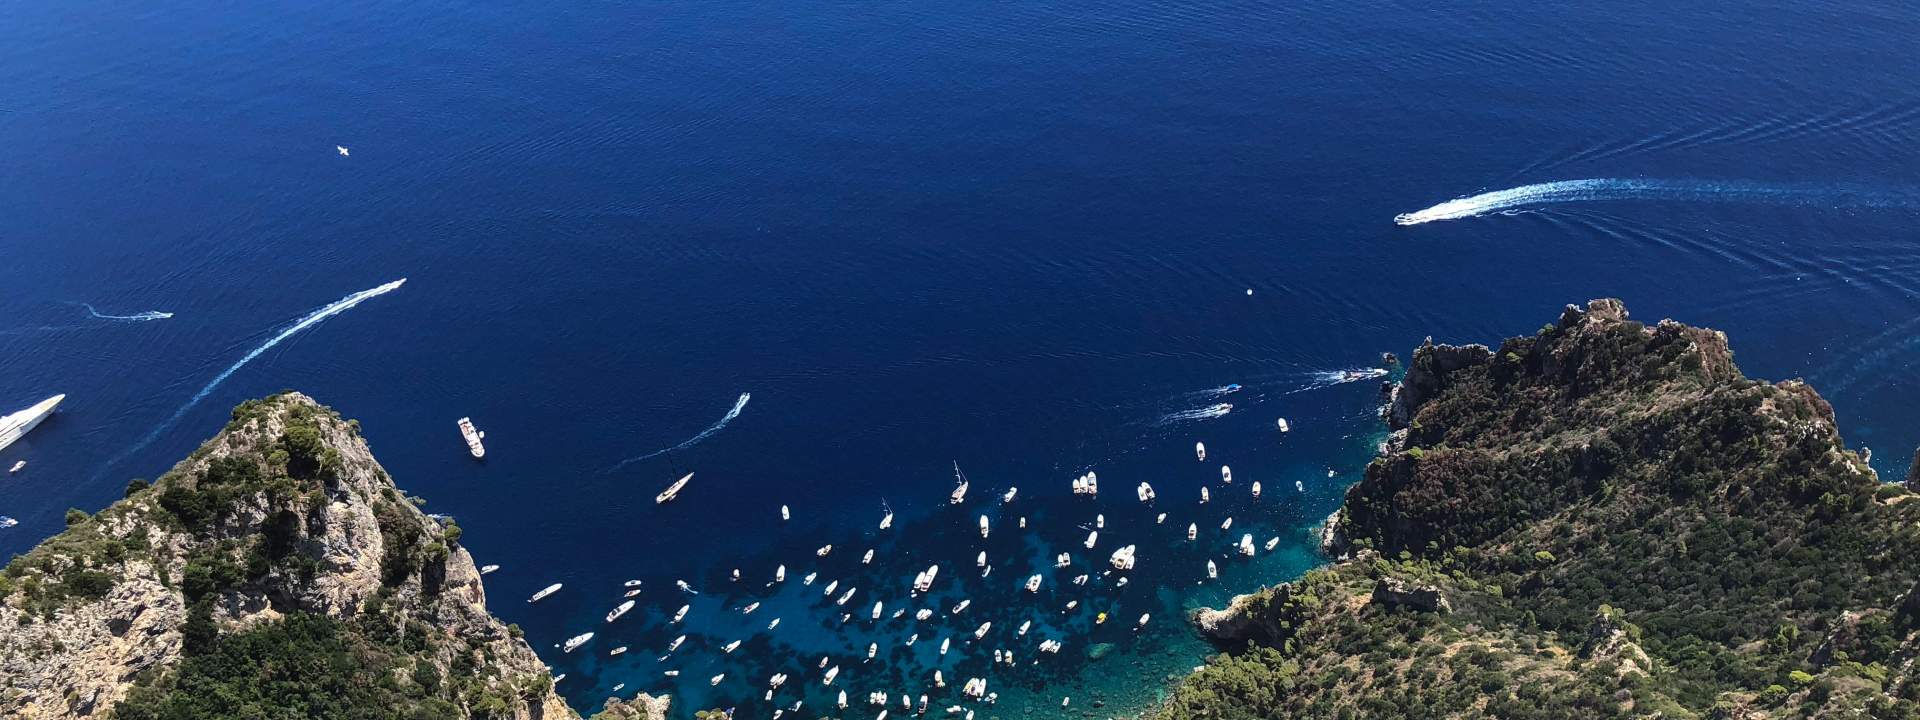 Una semana navegando por la costa de Amalfi, degustando vinos y platos locales.